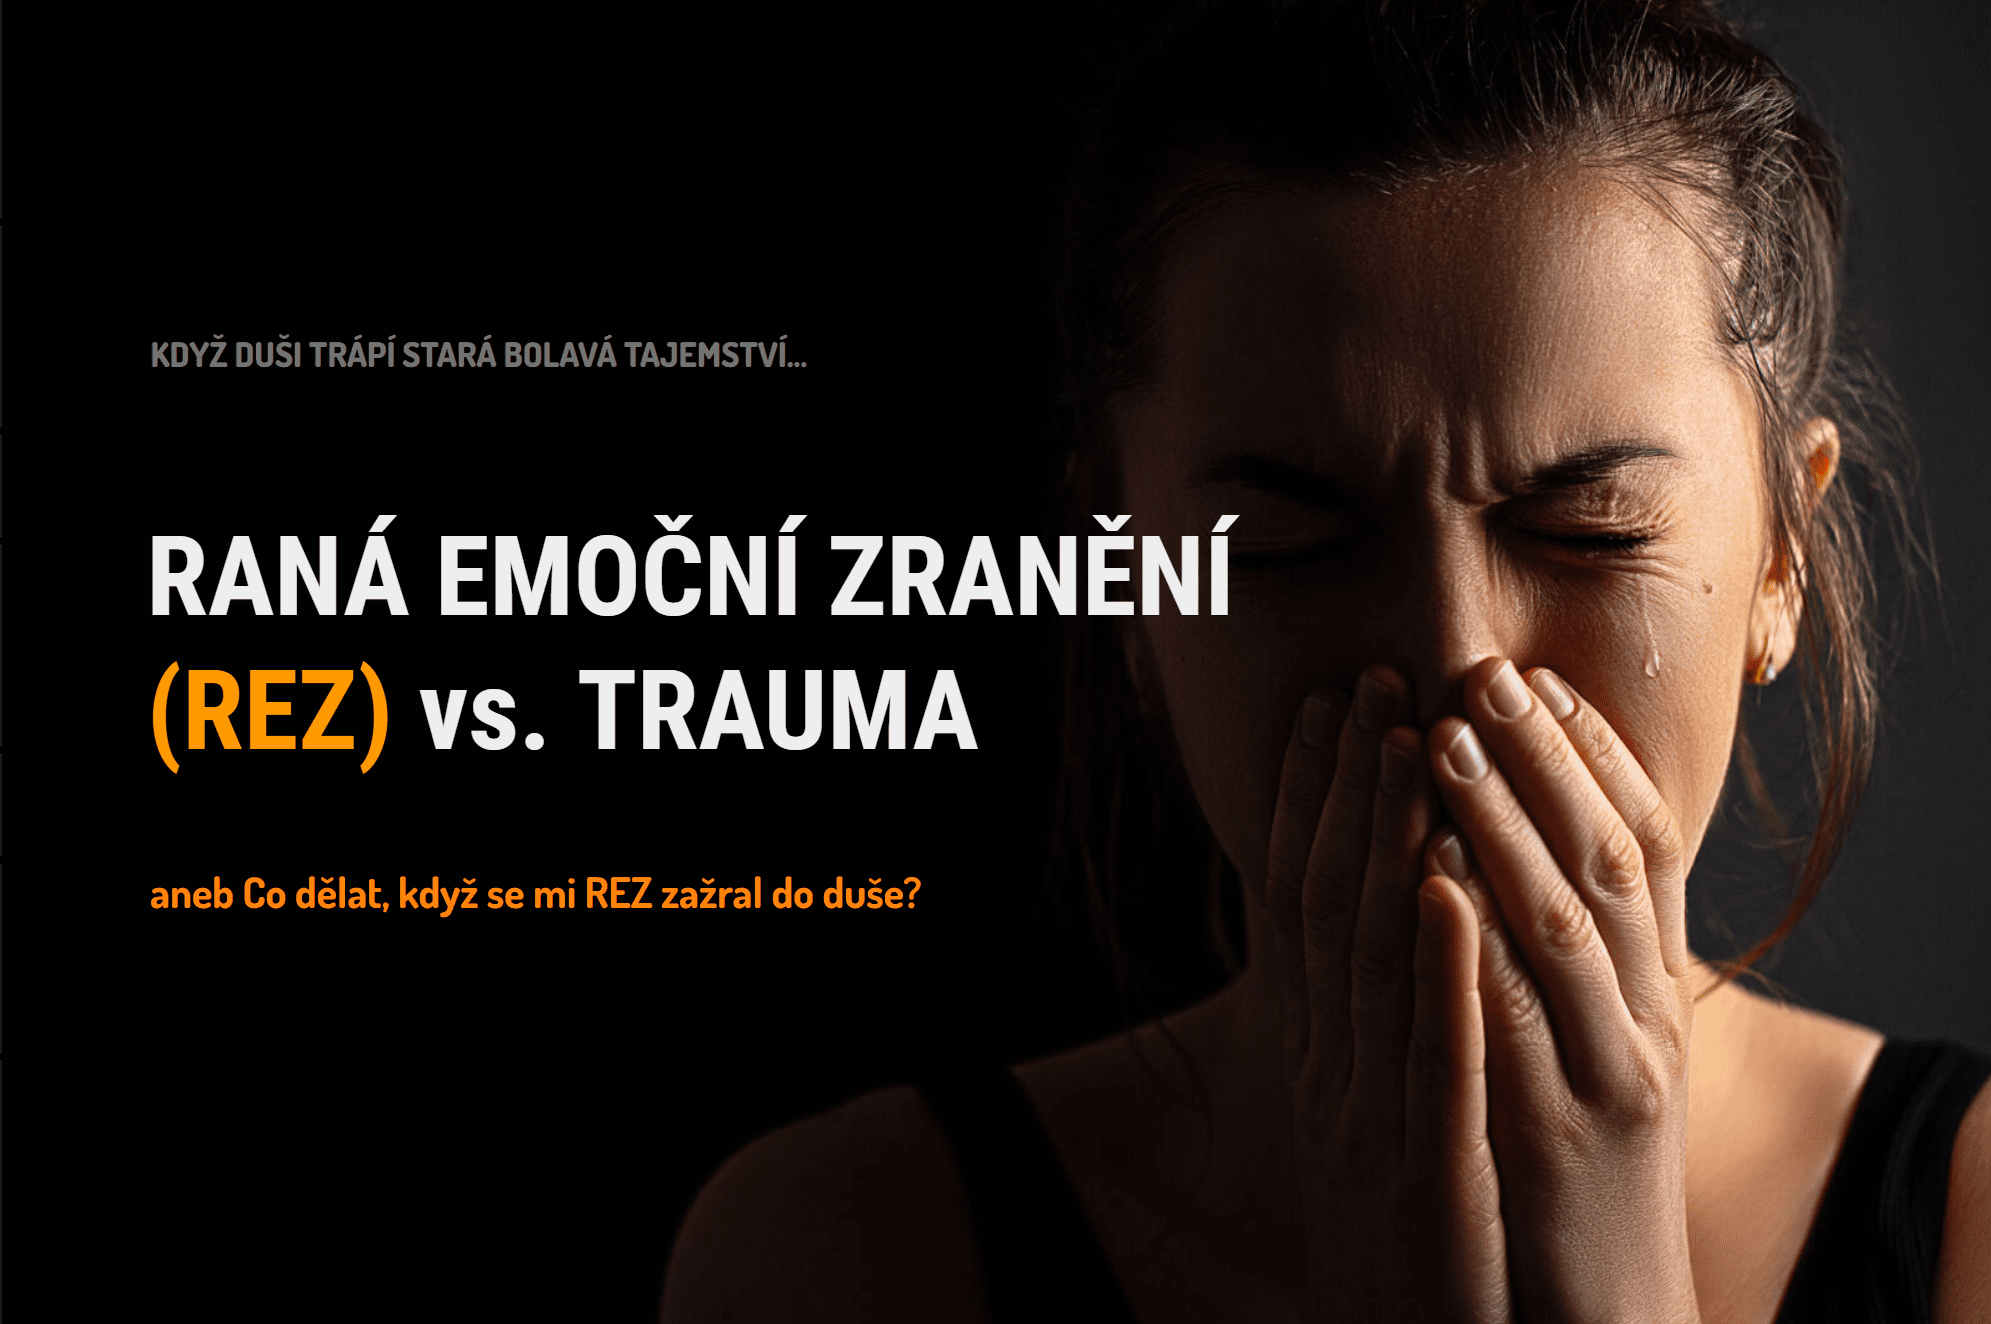 Raná emoční zranění vs. trauma - online kurz Pavel Rataj a Honza Vojtko